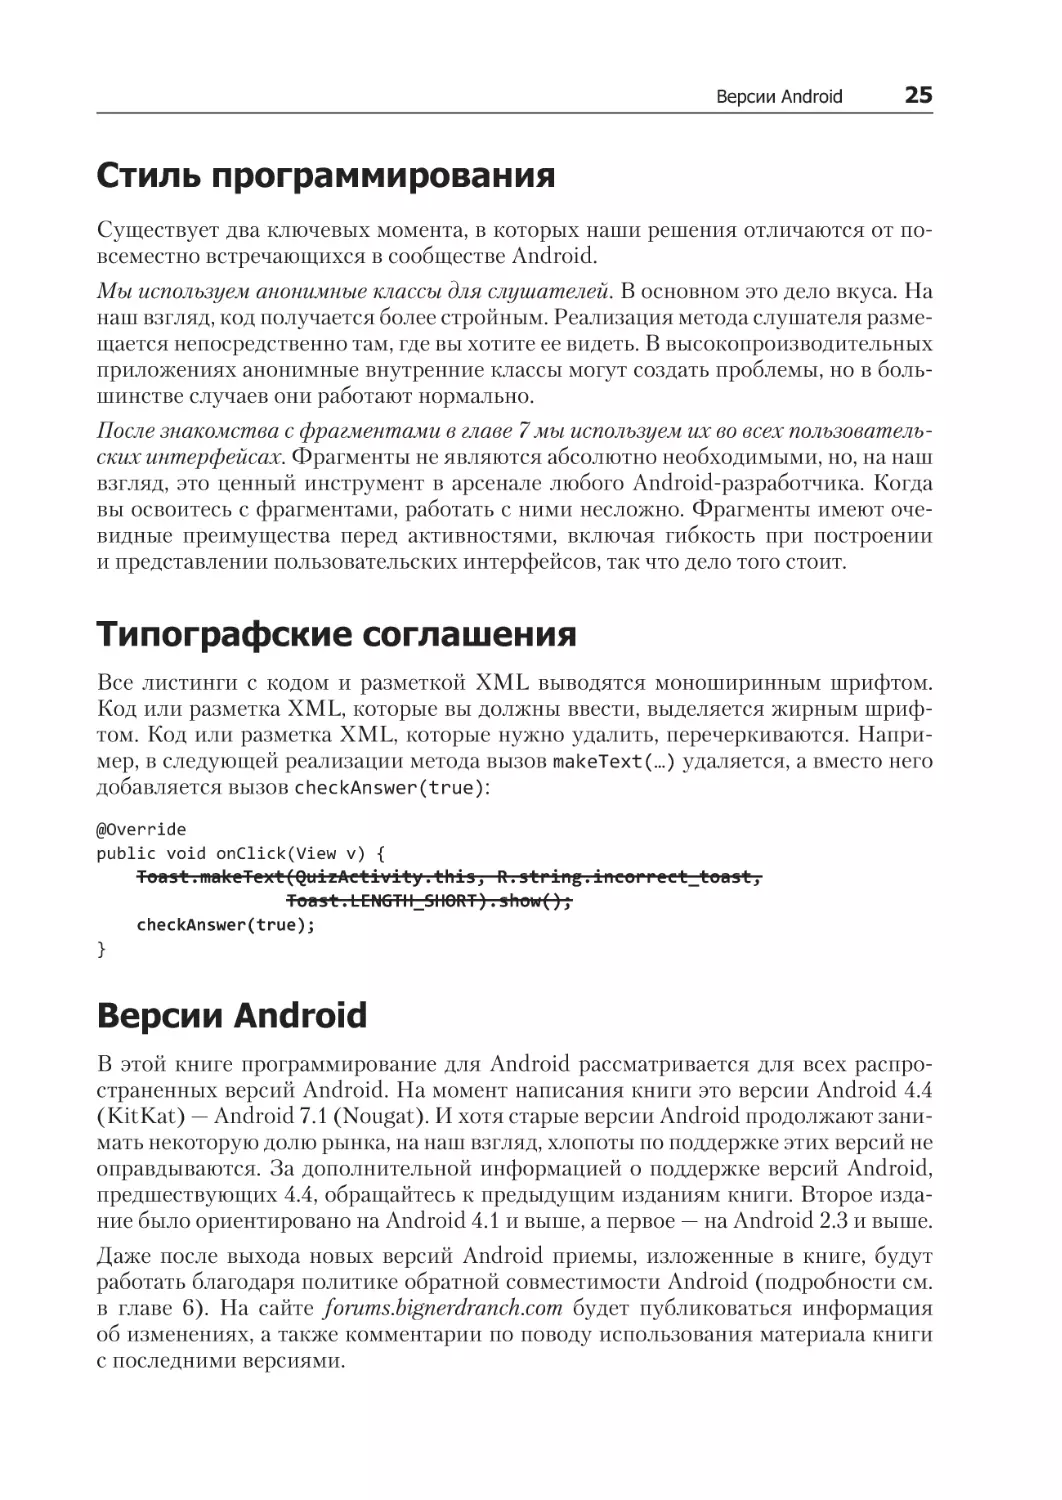 Стиль программирования
Типографские соглашения
Версии Android